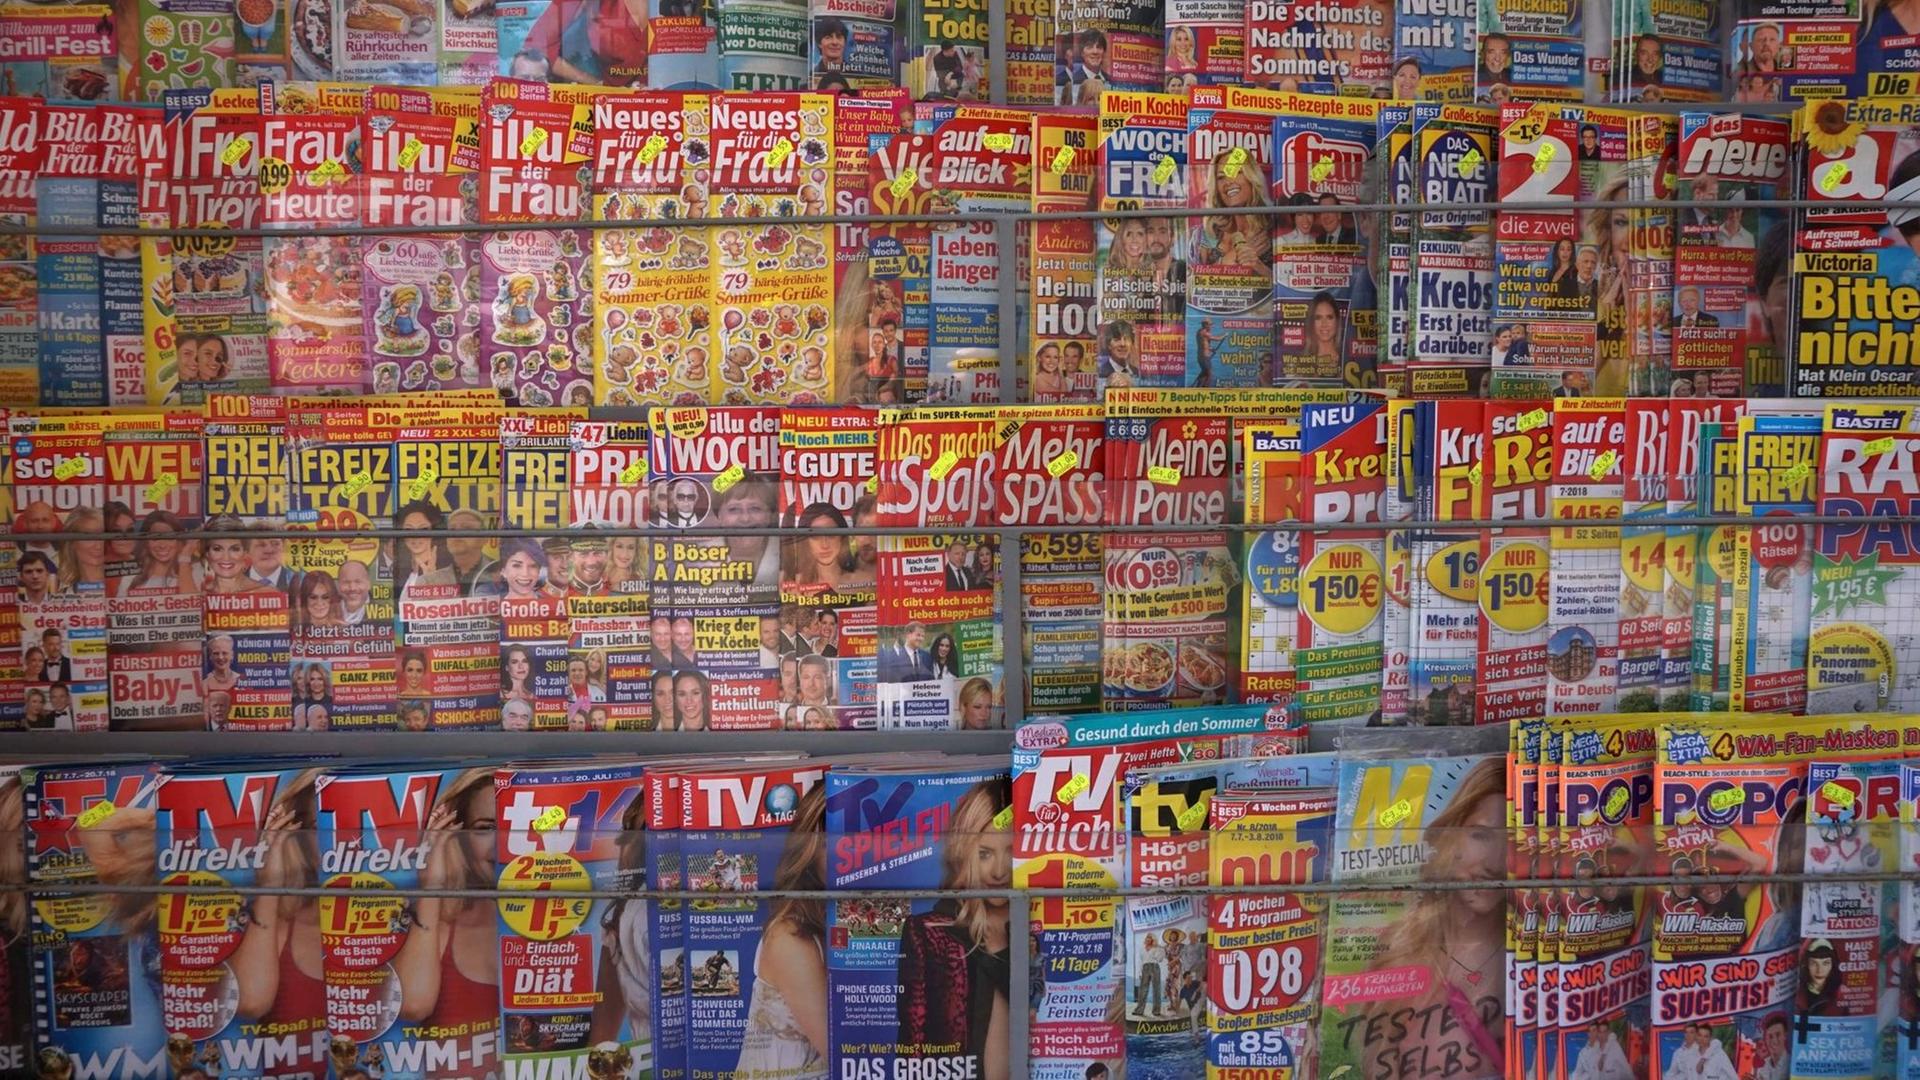 Zeitschriften Verkauf in Alcudia auf der Balearen-Insel Mallorca, Spanien, aufgenommen am 9. Juli 2018.